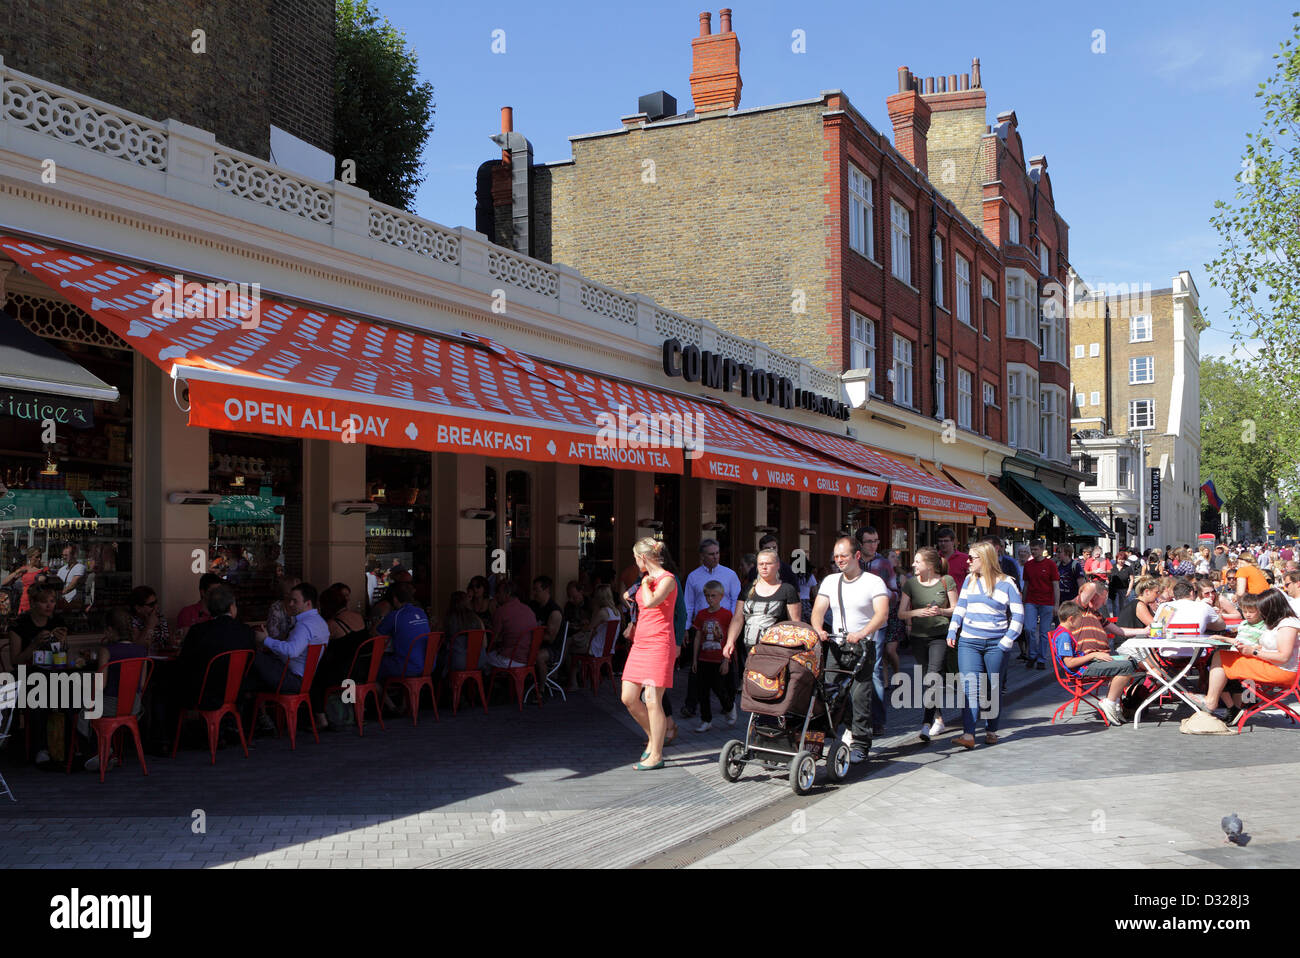 Le quartier français de South Kensington, ses cafés sont un repaire populaire pour tous les peuples qui aiment que l'atmosphère de plein air Banque D'Images